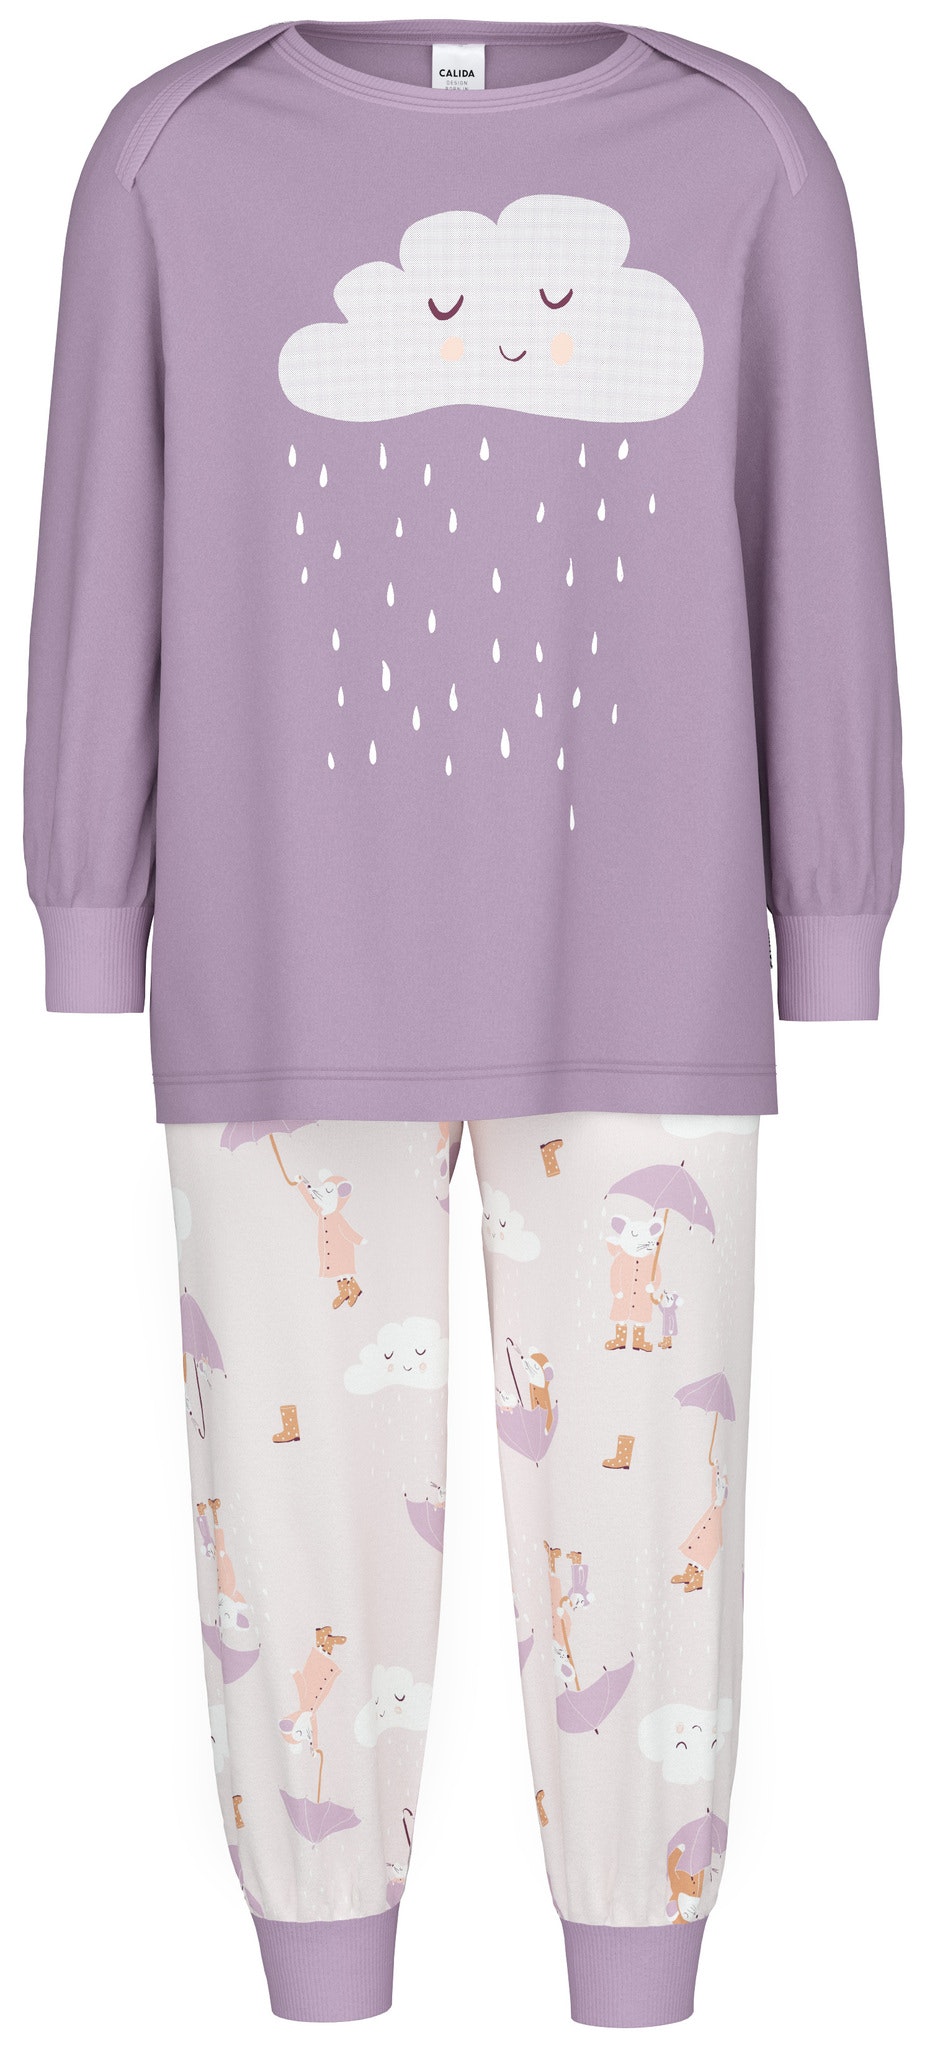 Calida barn pyjamas Toddlers Umbrella 55076/ 320 lavender